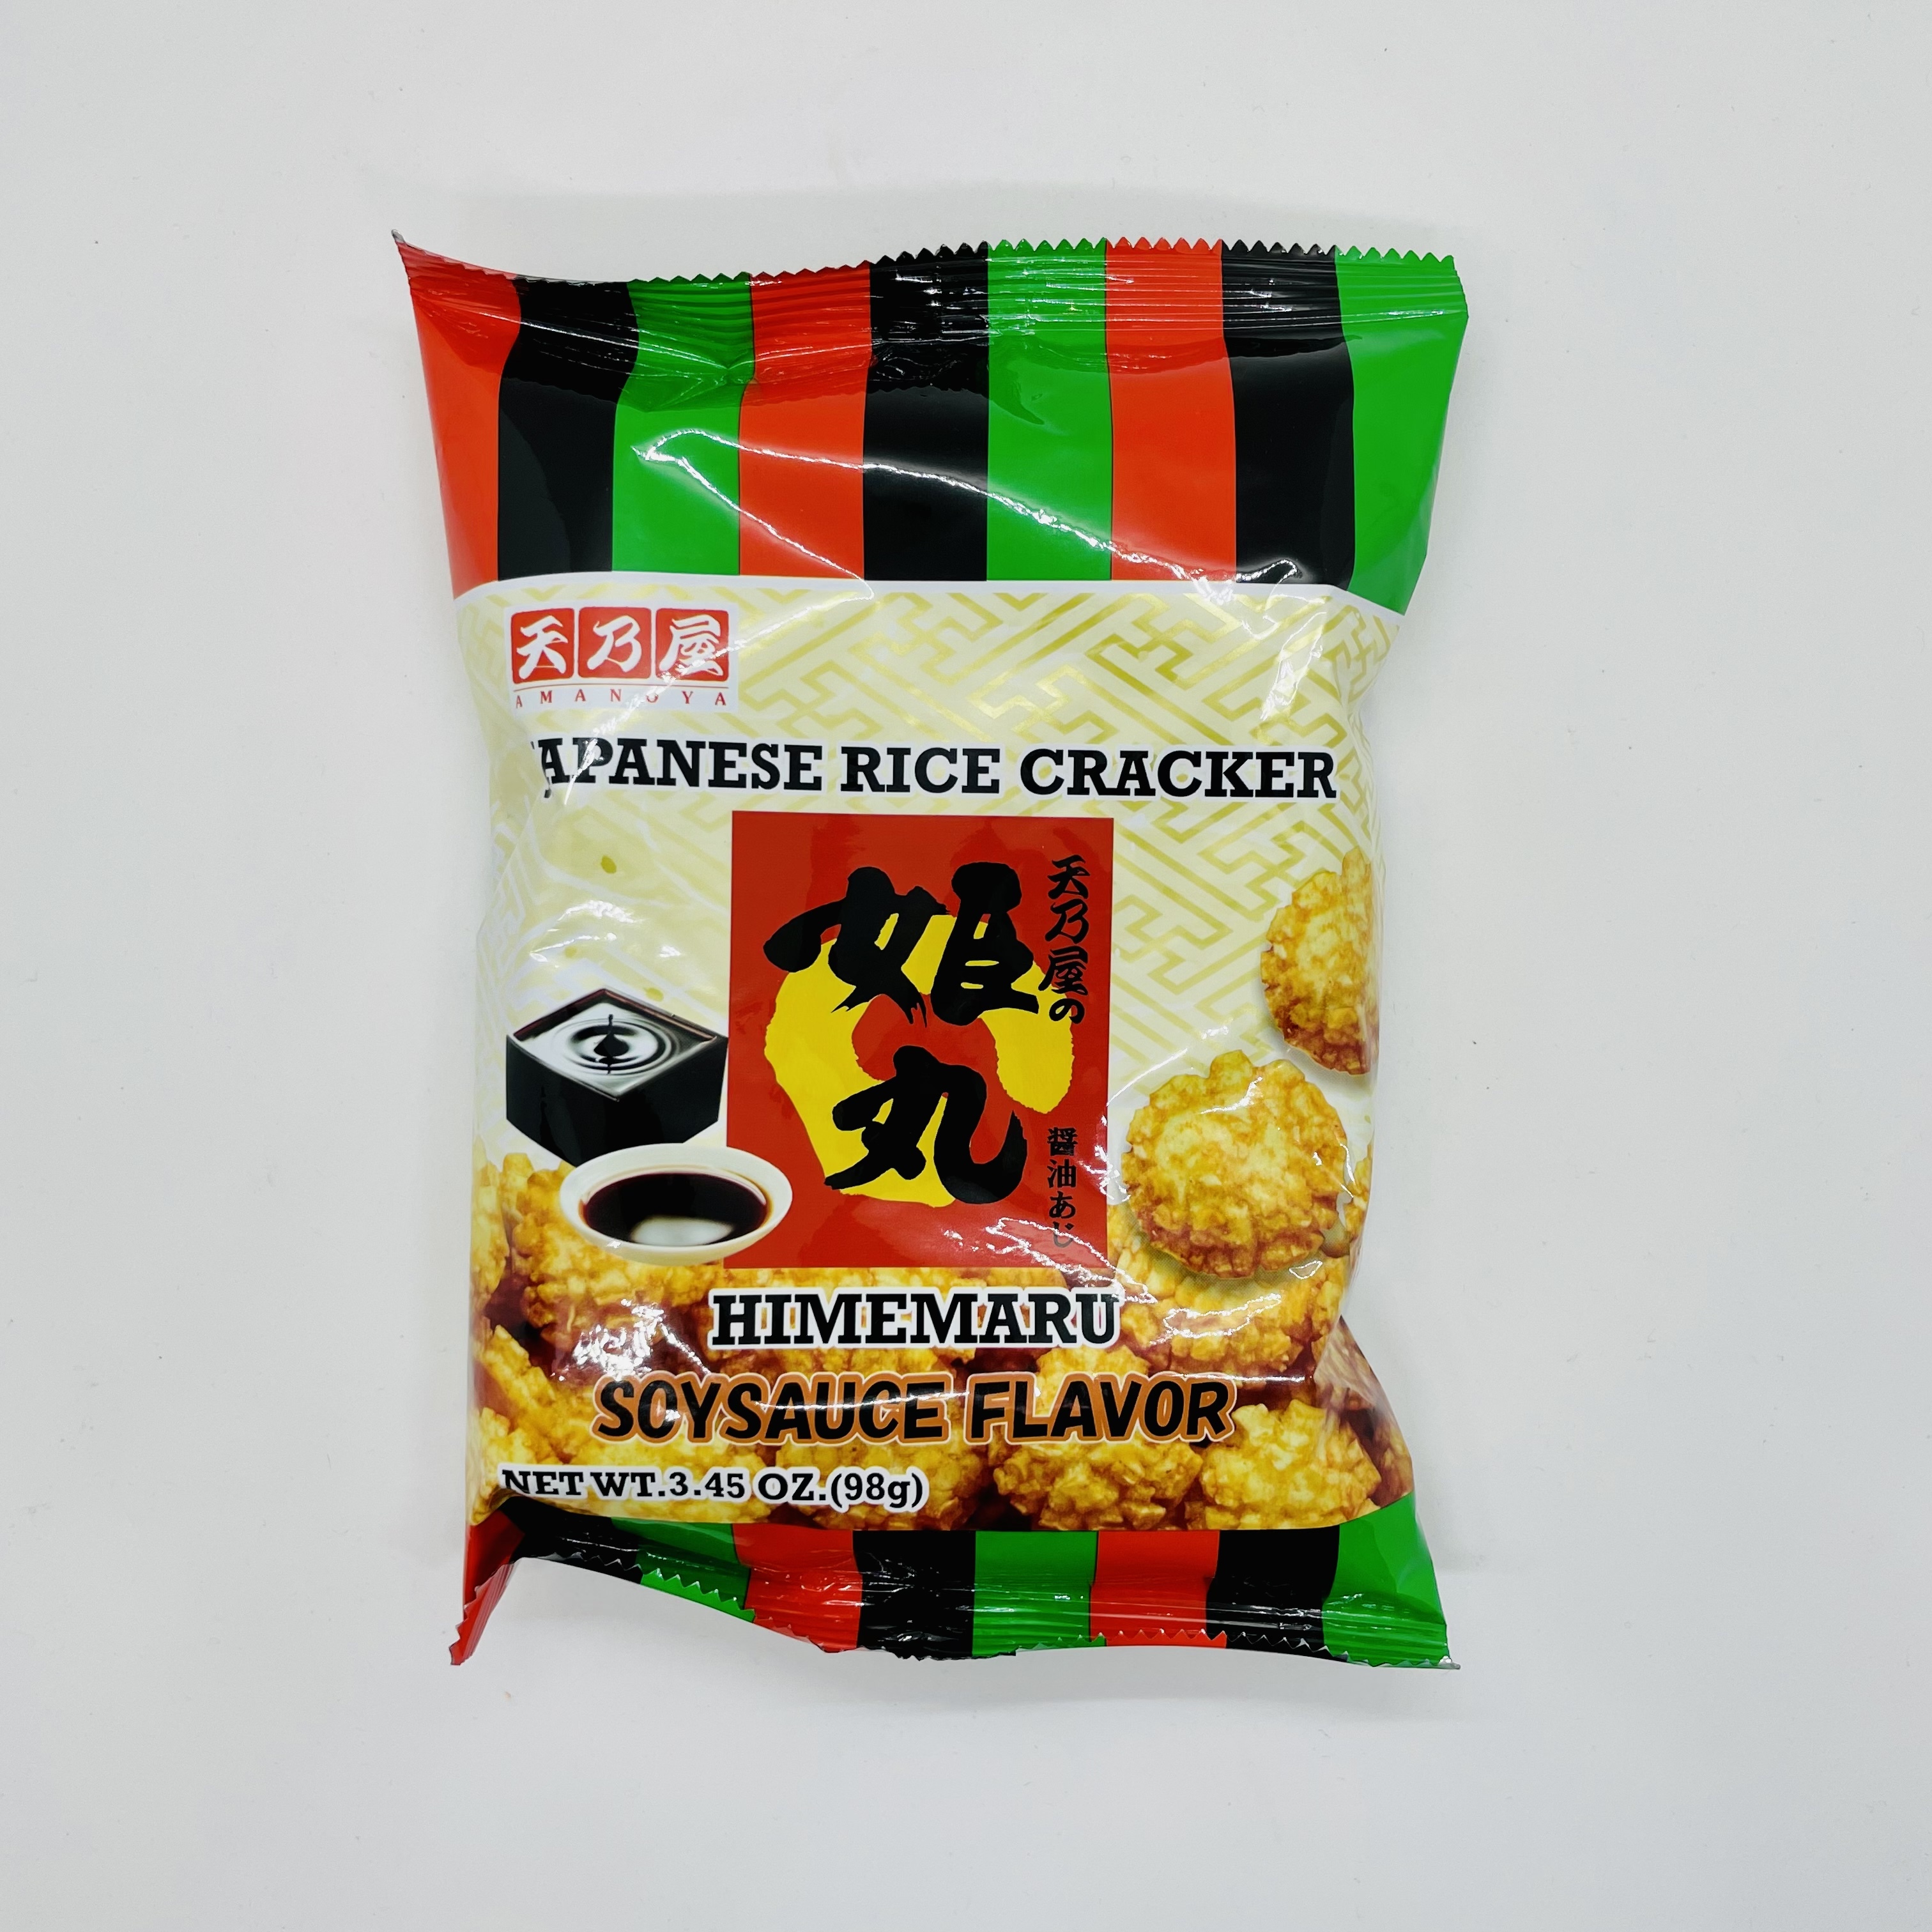 Rice crackers